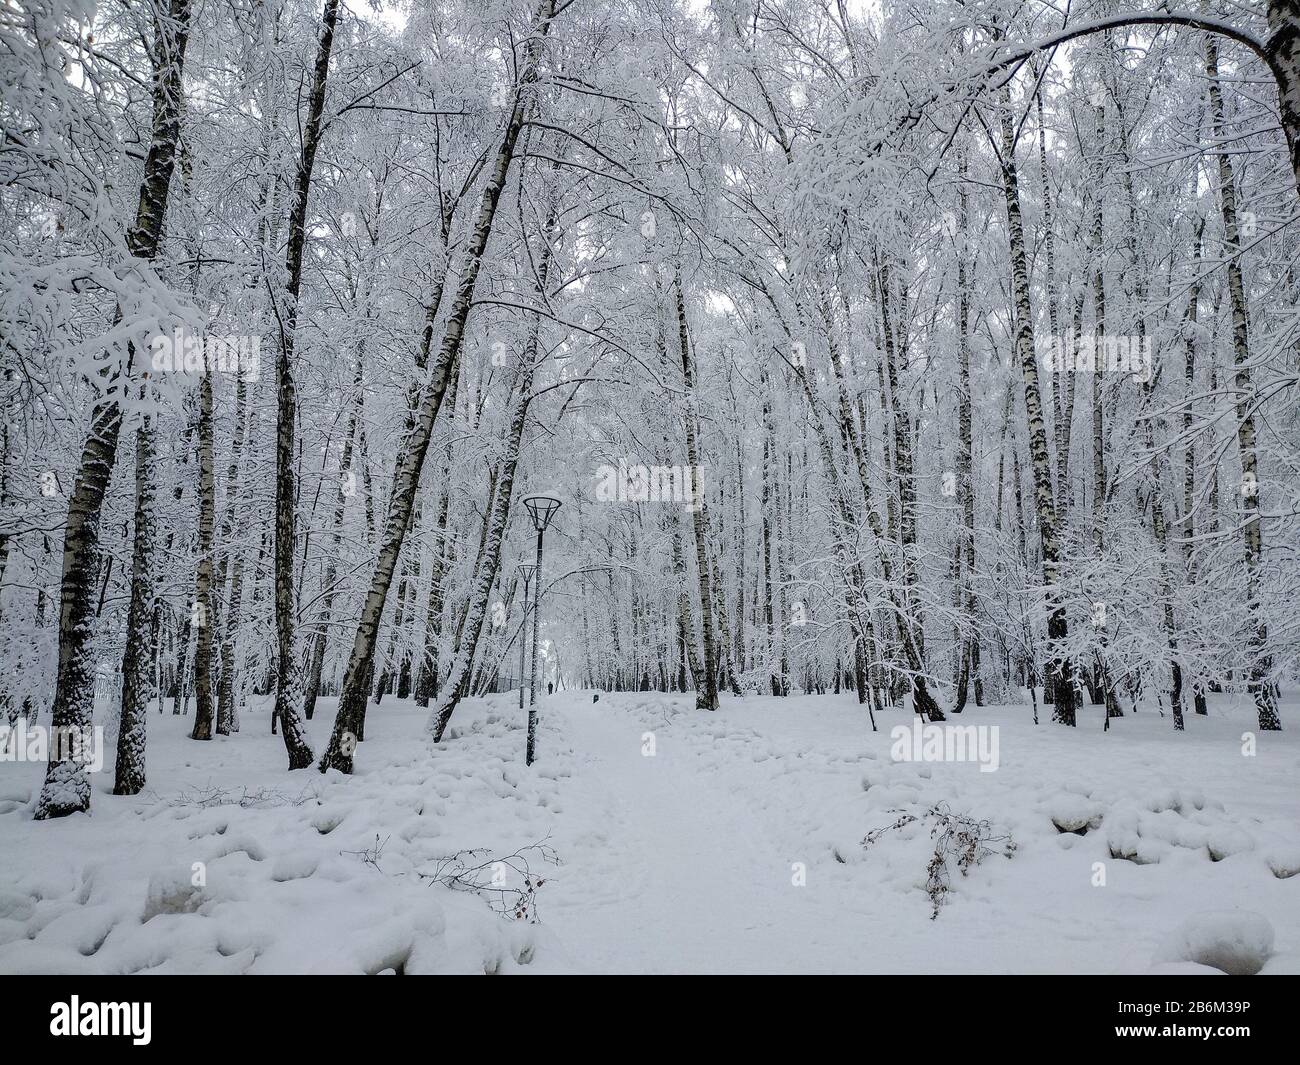 Paysage d'hiver avec les arbres et arbustes couverts de neige après une importante chute de neige Banque D'Images